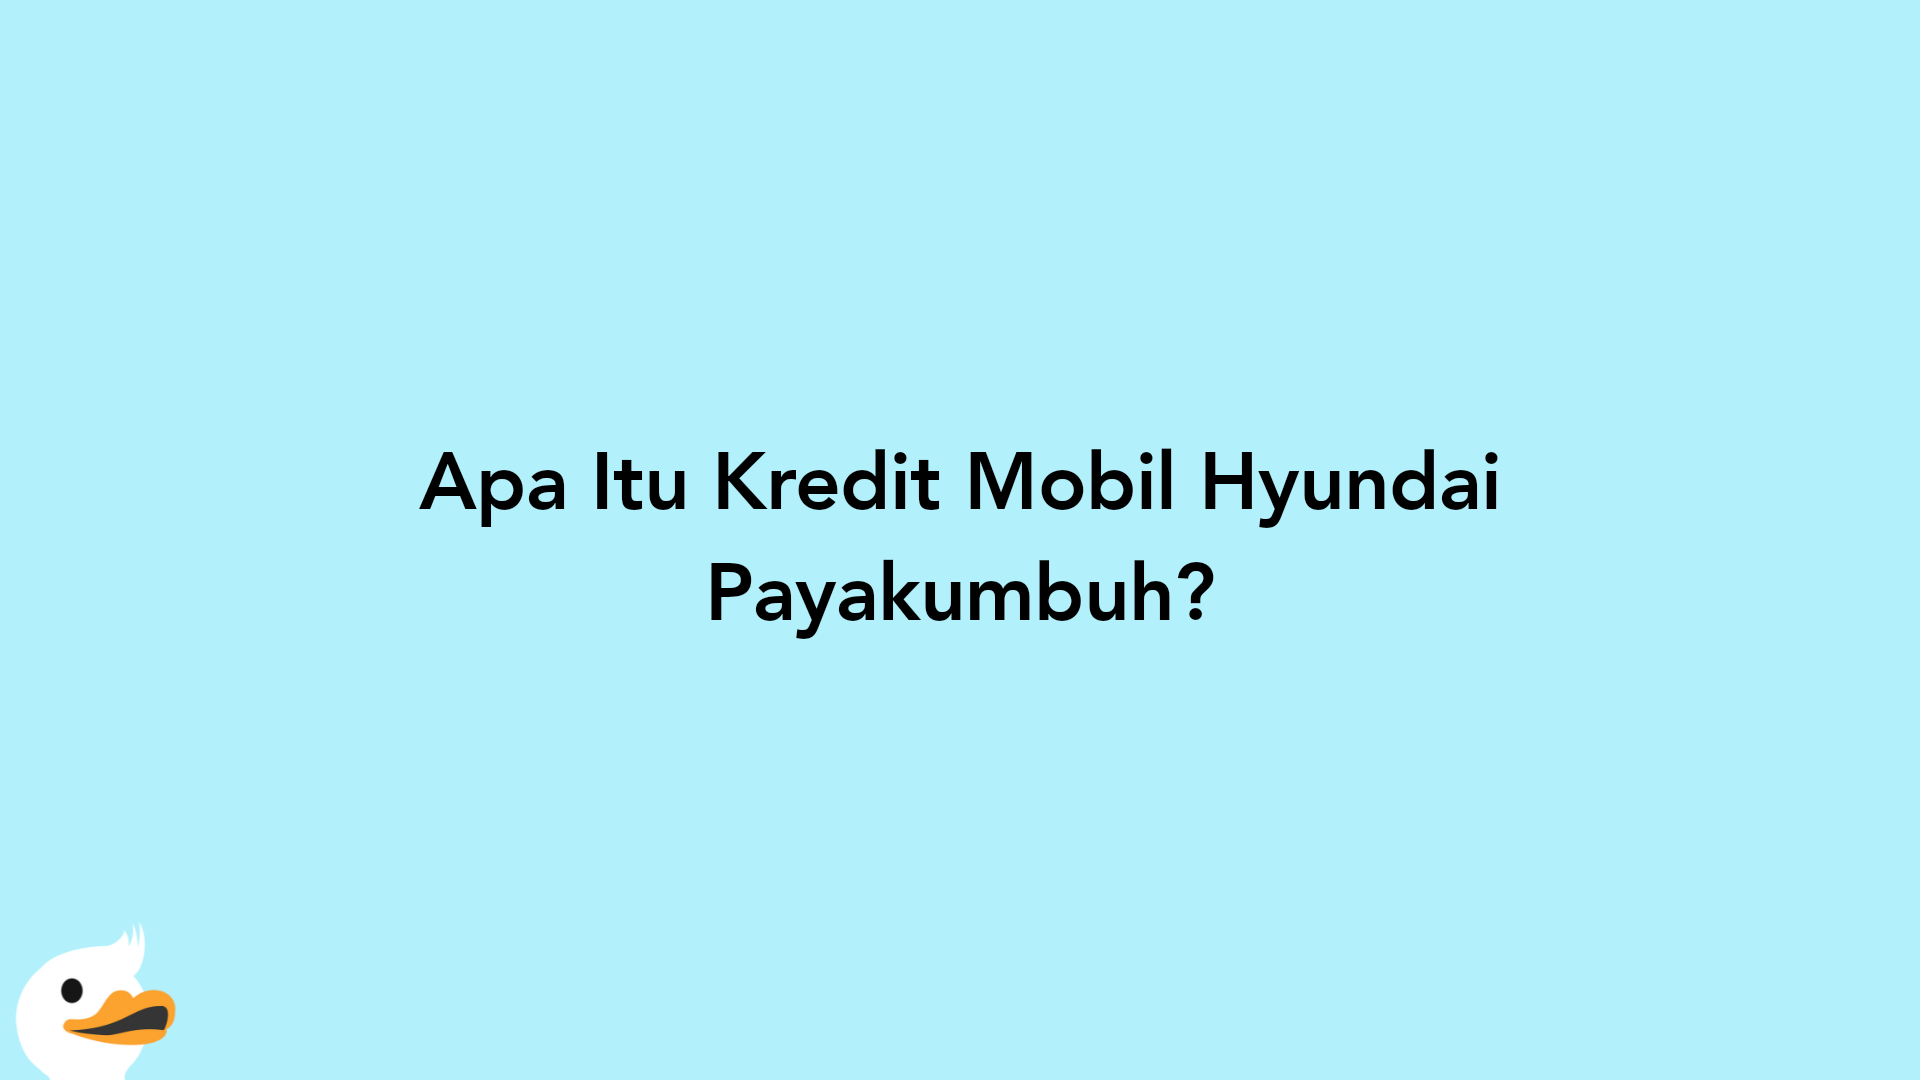 Apa Itu Kredit Mobil Hyundai Payakumbuh?